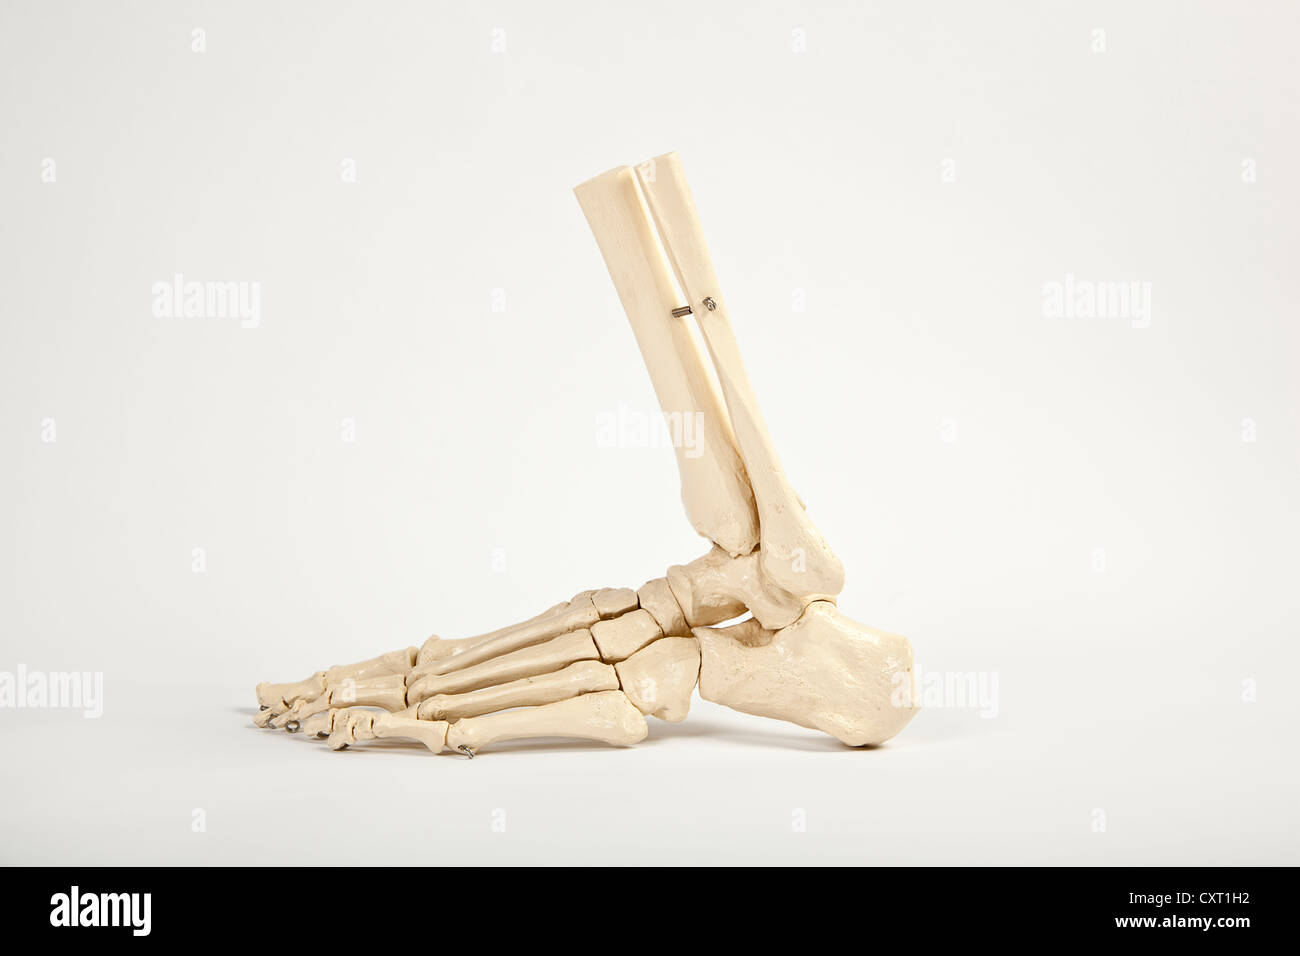 Pied humain, modèle anatomique Banque D'Images